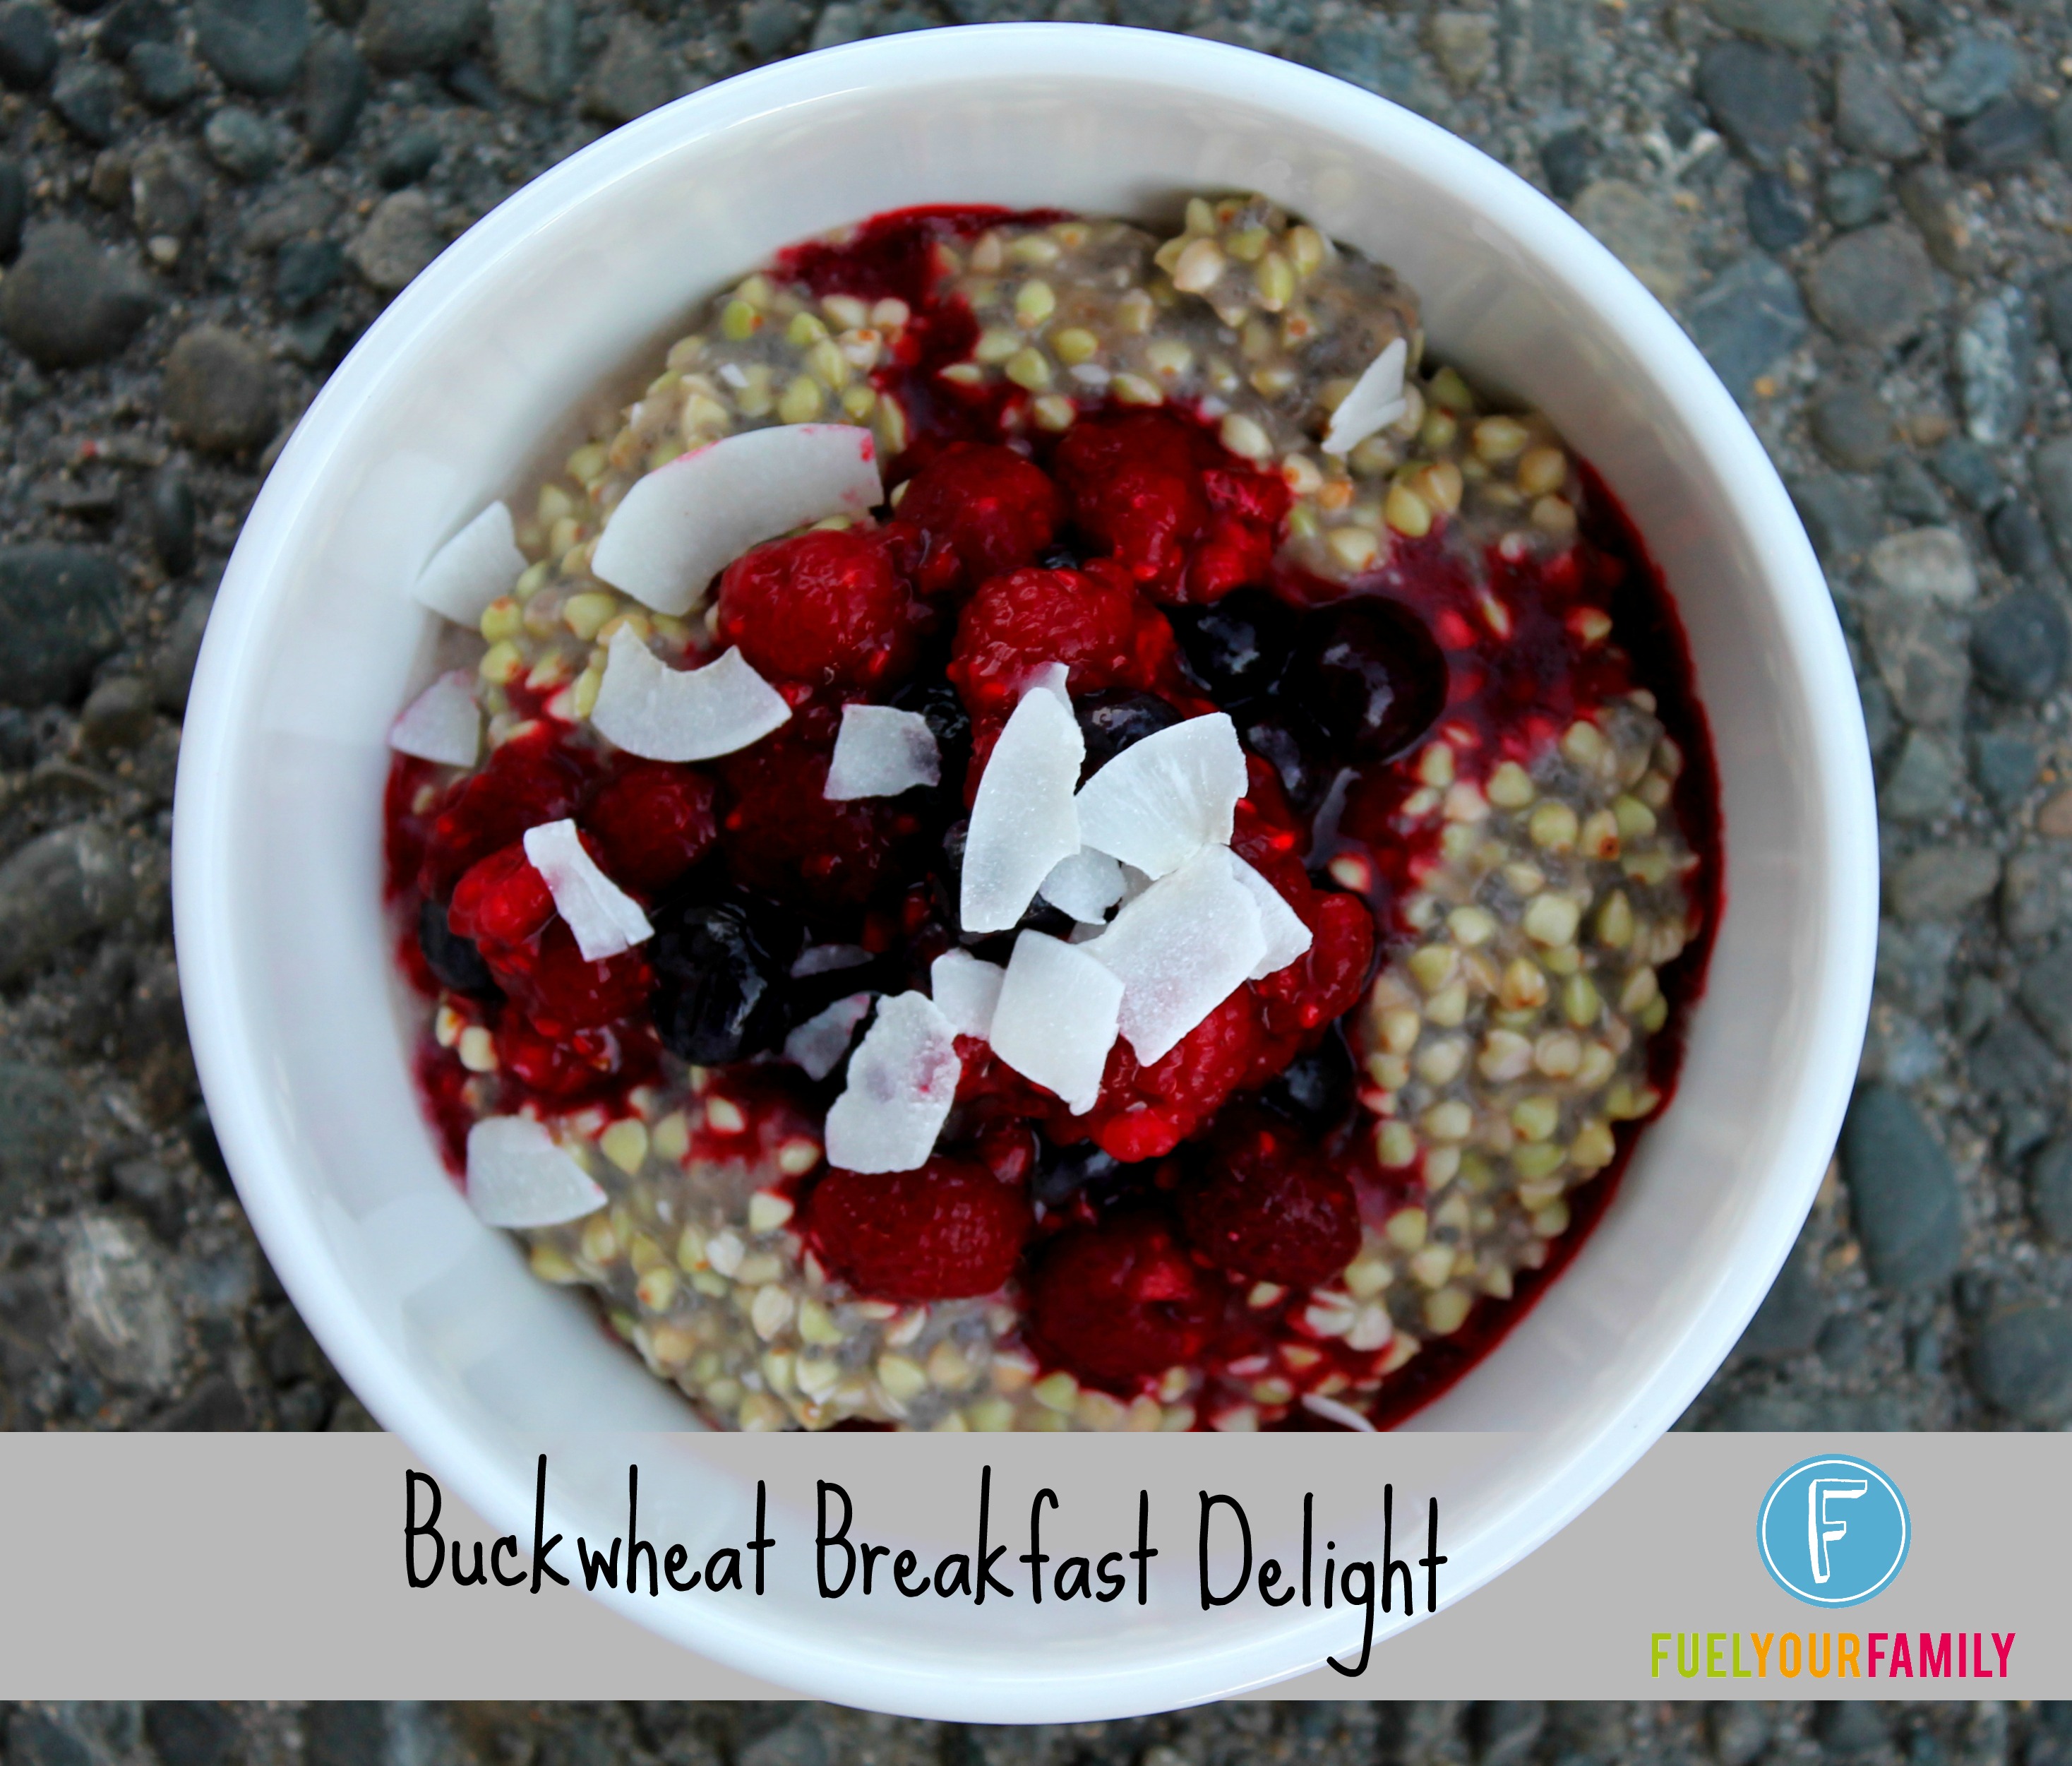 Buckwheat Breakfast Delight title